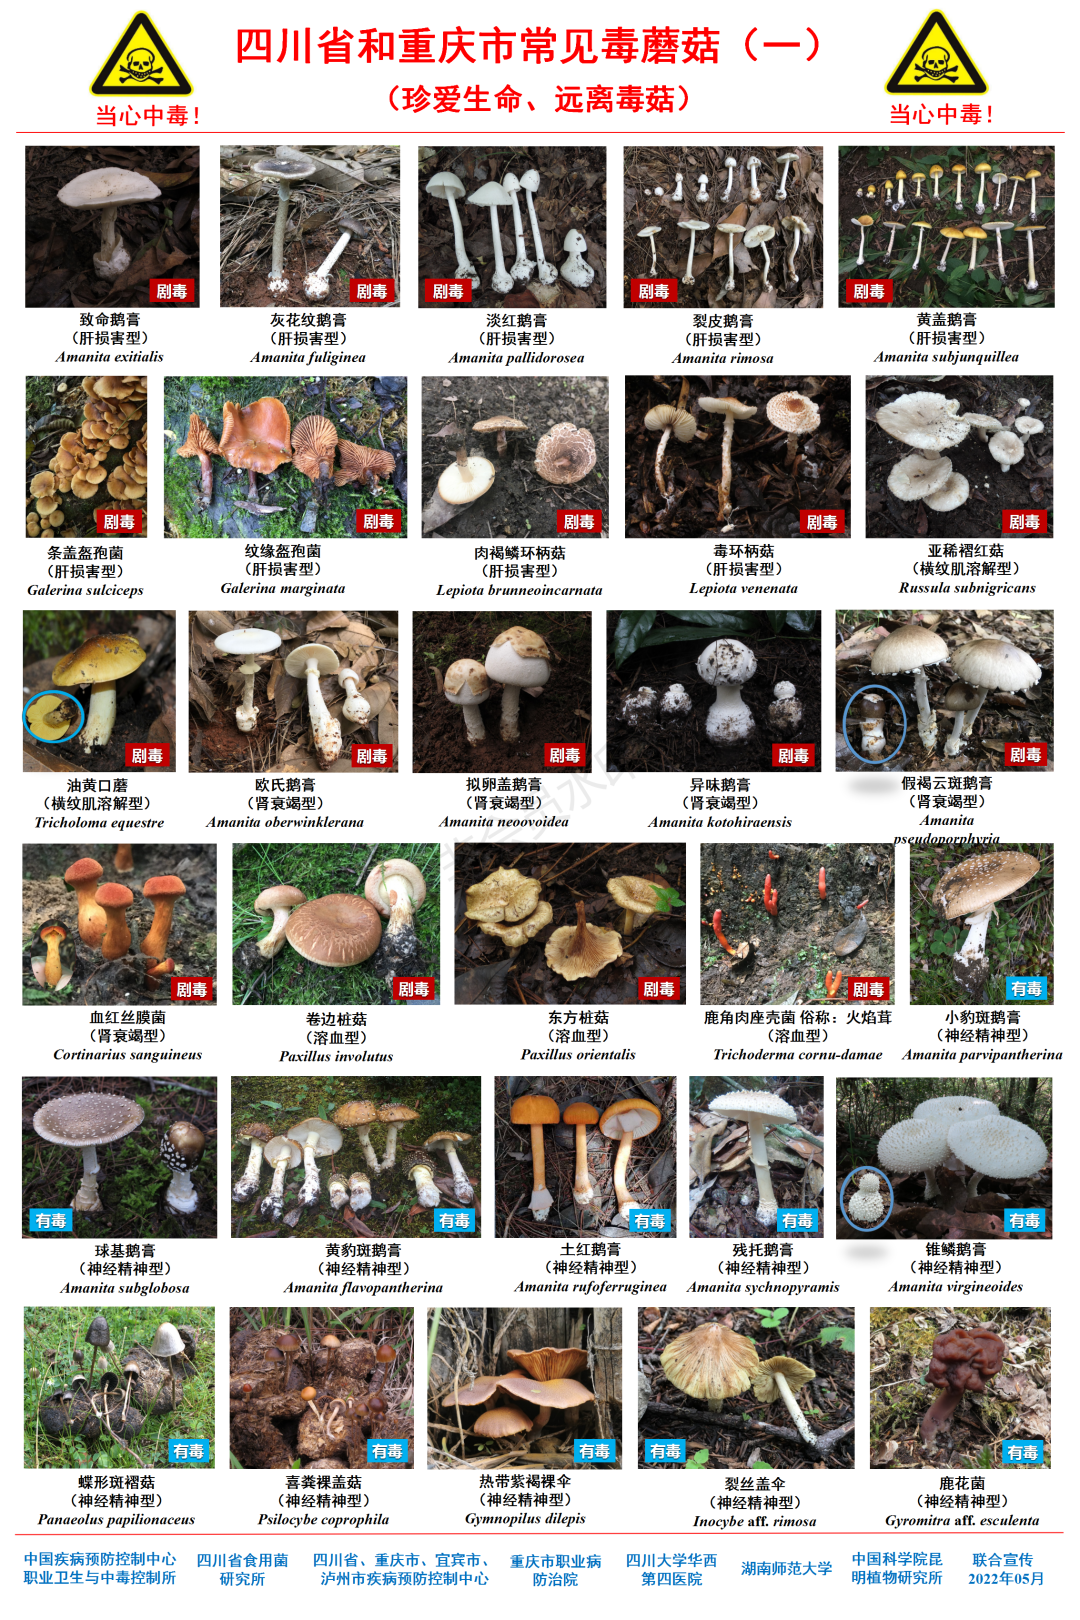 鲜艳的蘑菇才有毒？常见毒蘑菇图鉴来了！请收藏